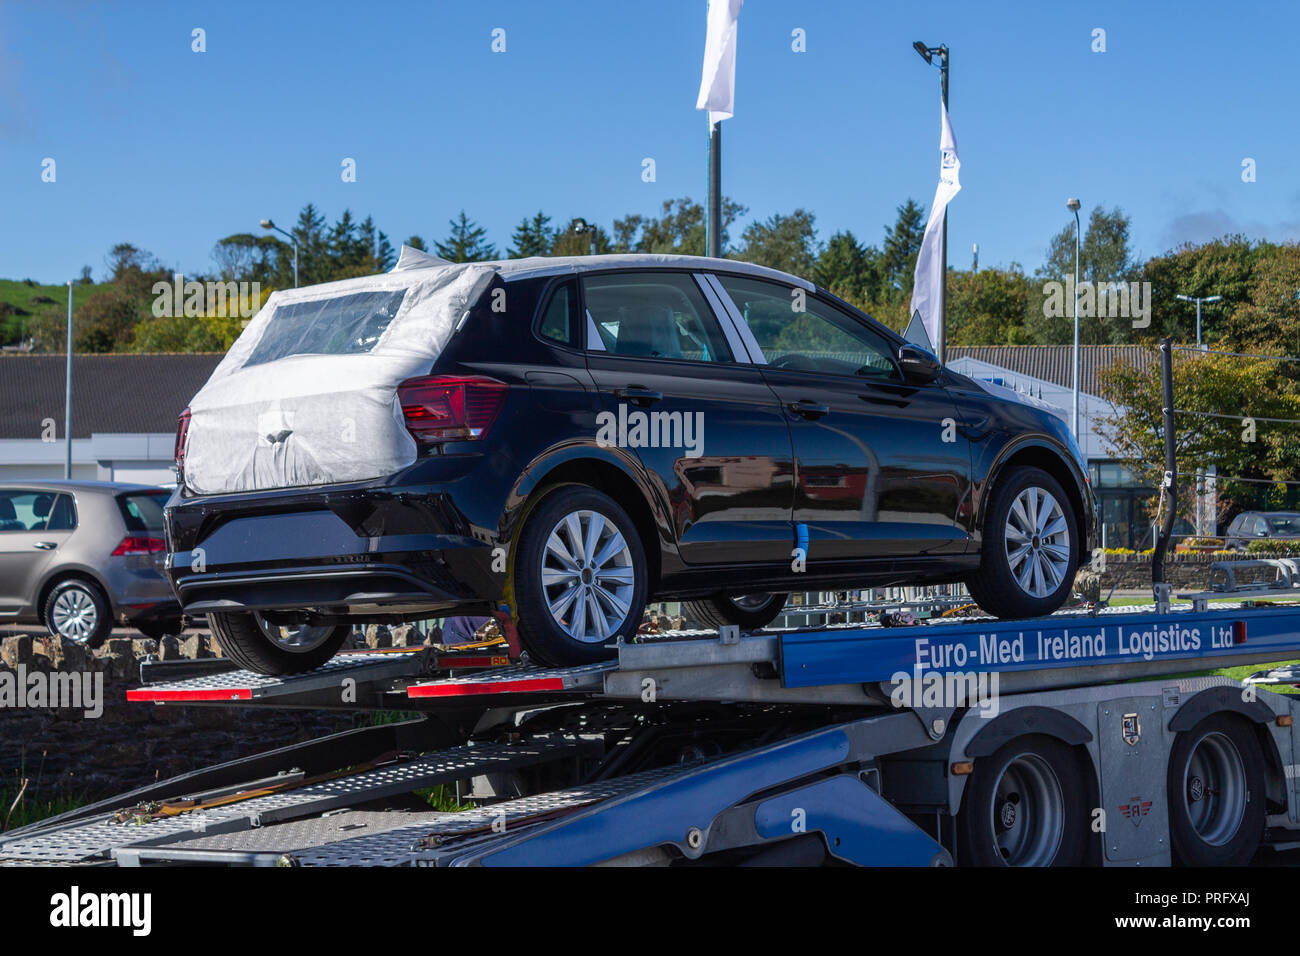 Brandneue Volkswagen Auto zu einer Händlerniederlassung auf einem Auto transporter geliefert Stockfoto